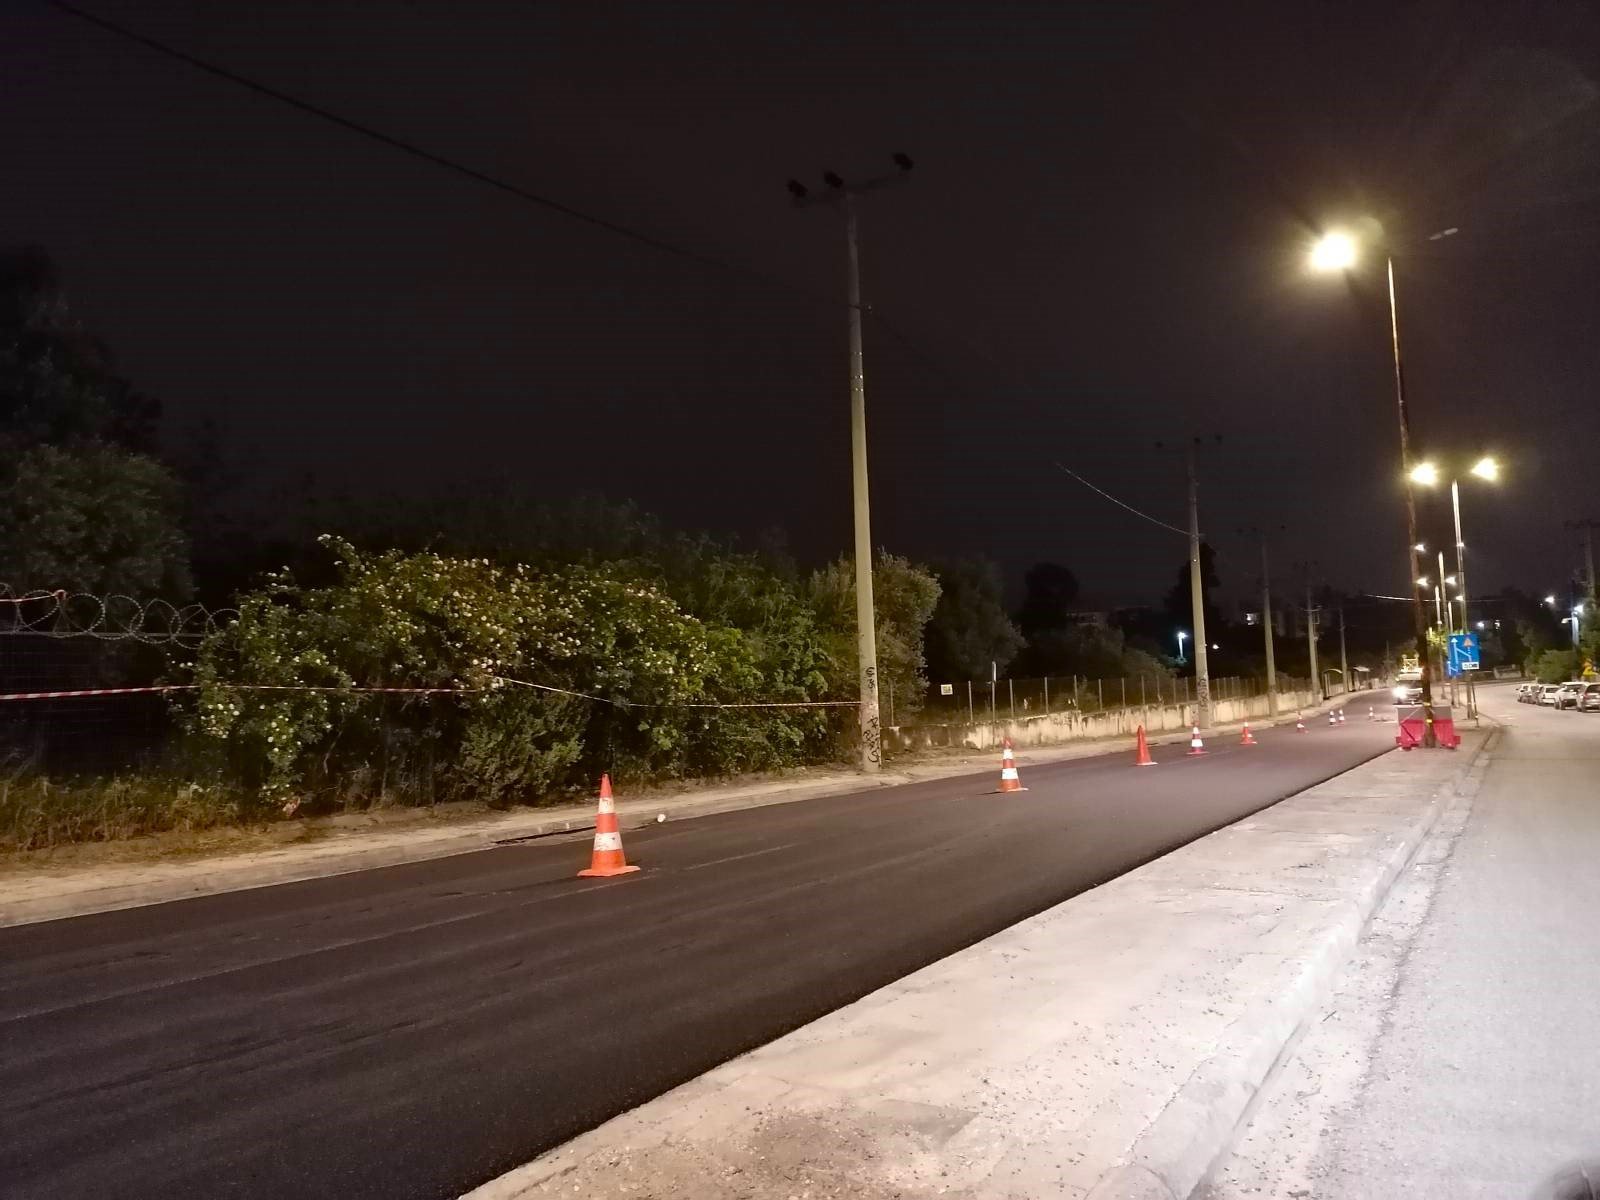 Ολοκληρώνεται το έργο ασφαλτόστρωσης της οδού Αμαρουσίου – Χαλανδρίου